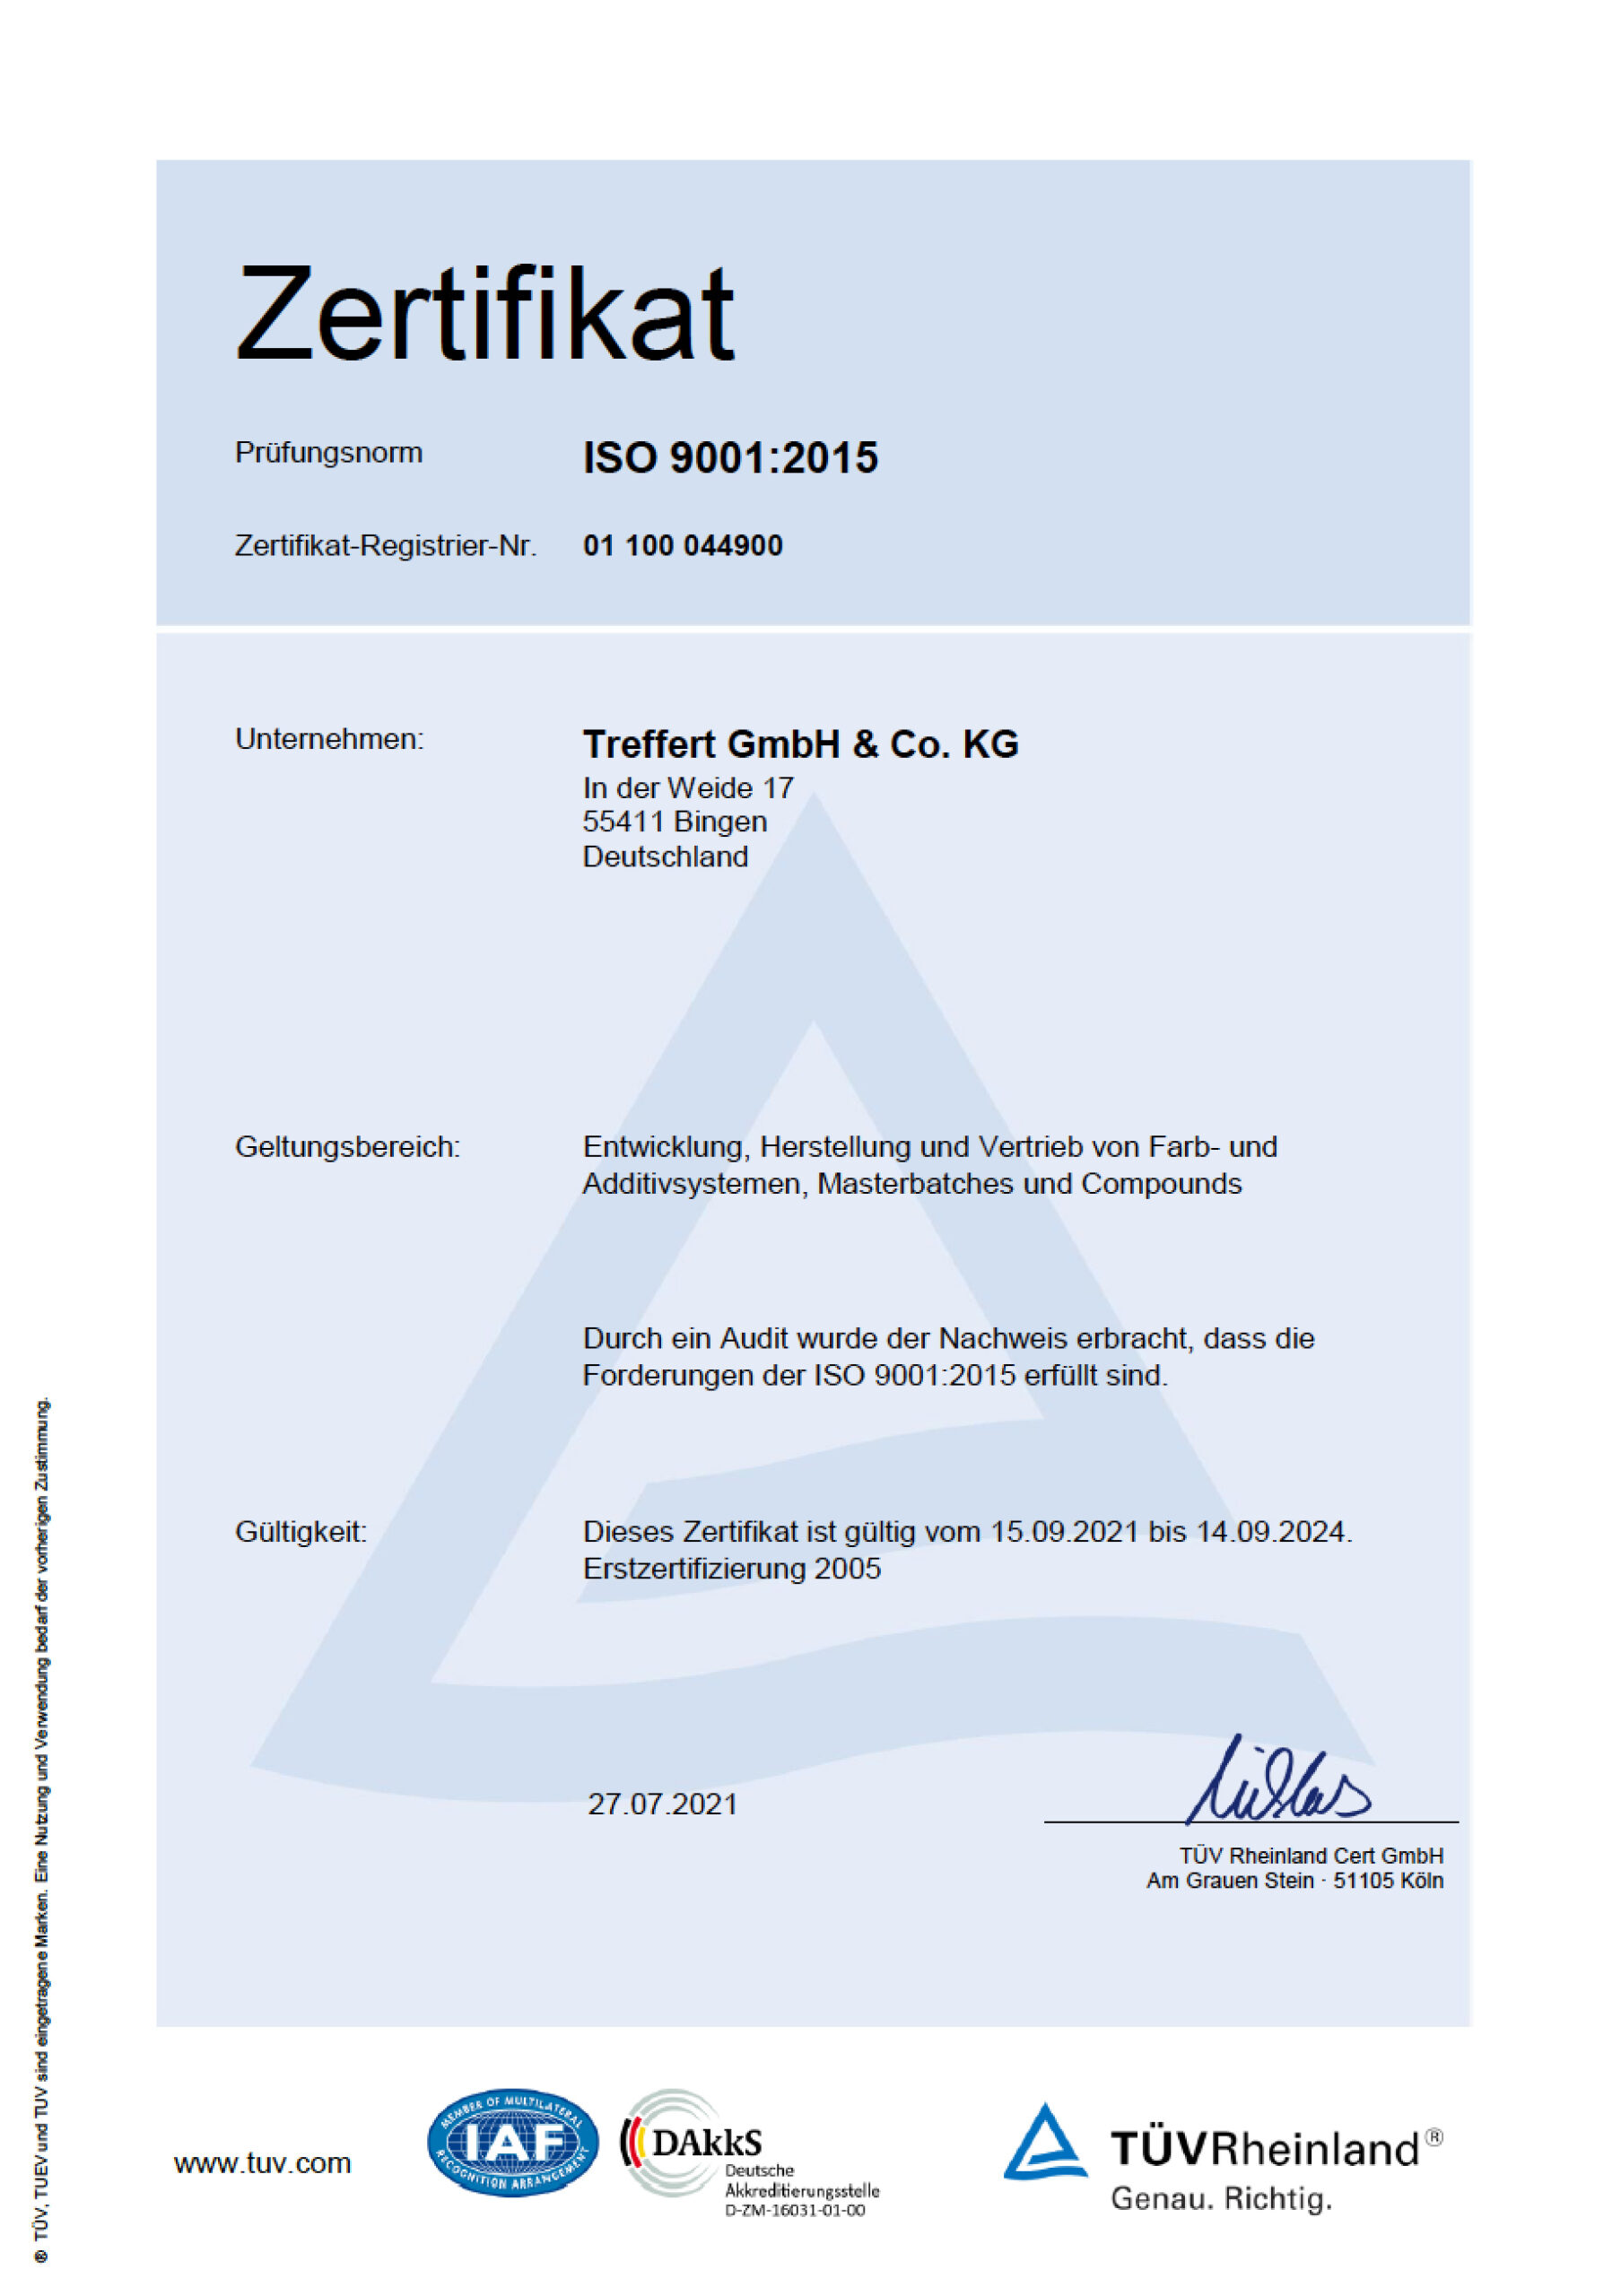 Treffert Zertifikat DIN EN ISO 9001